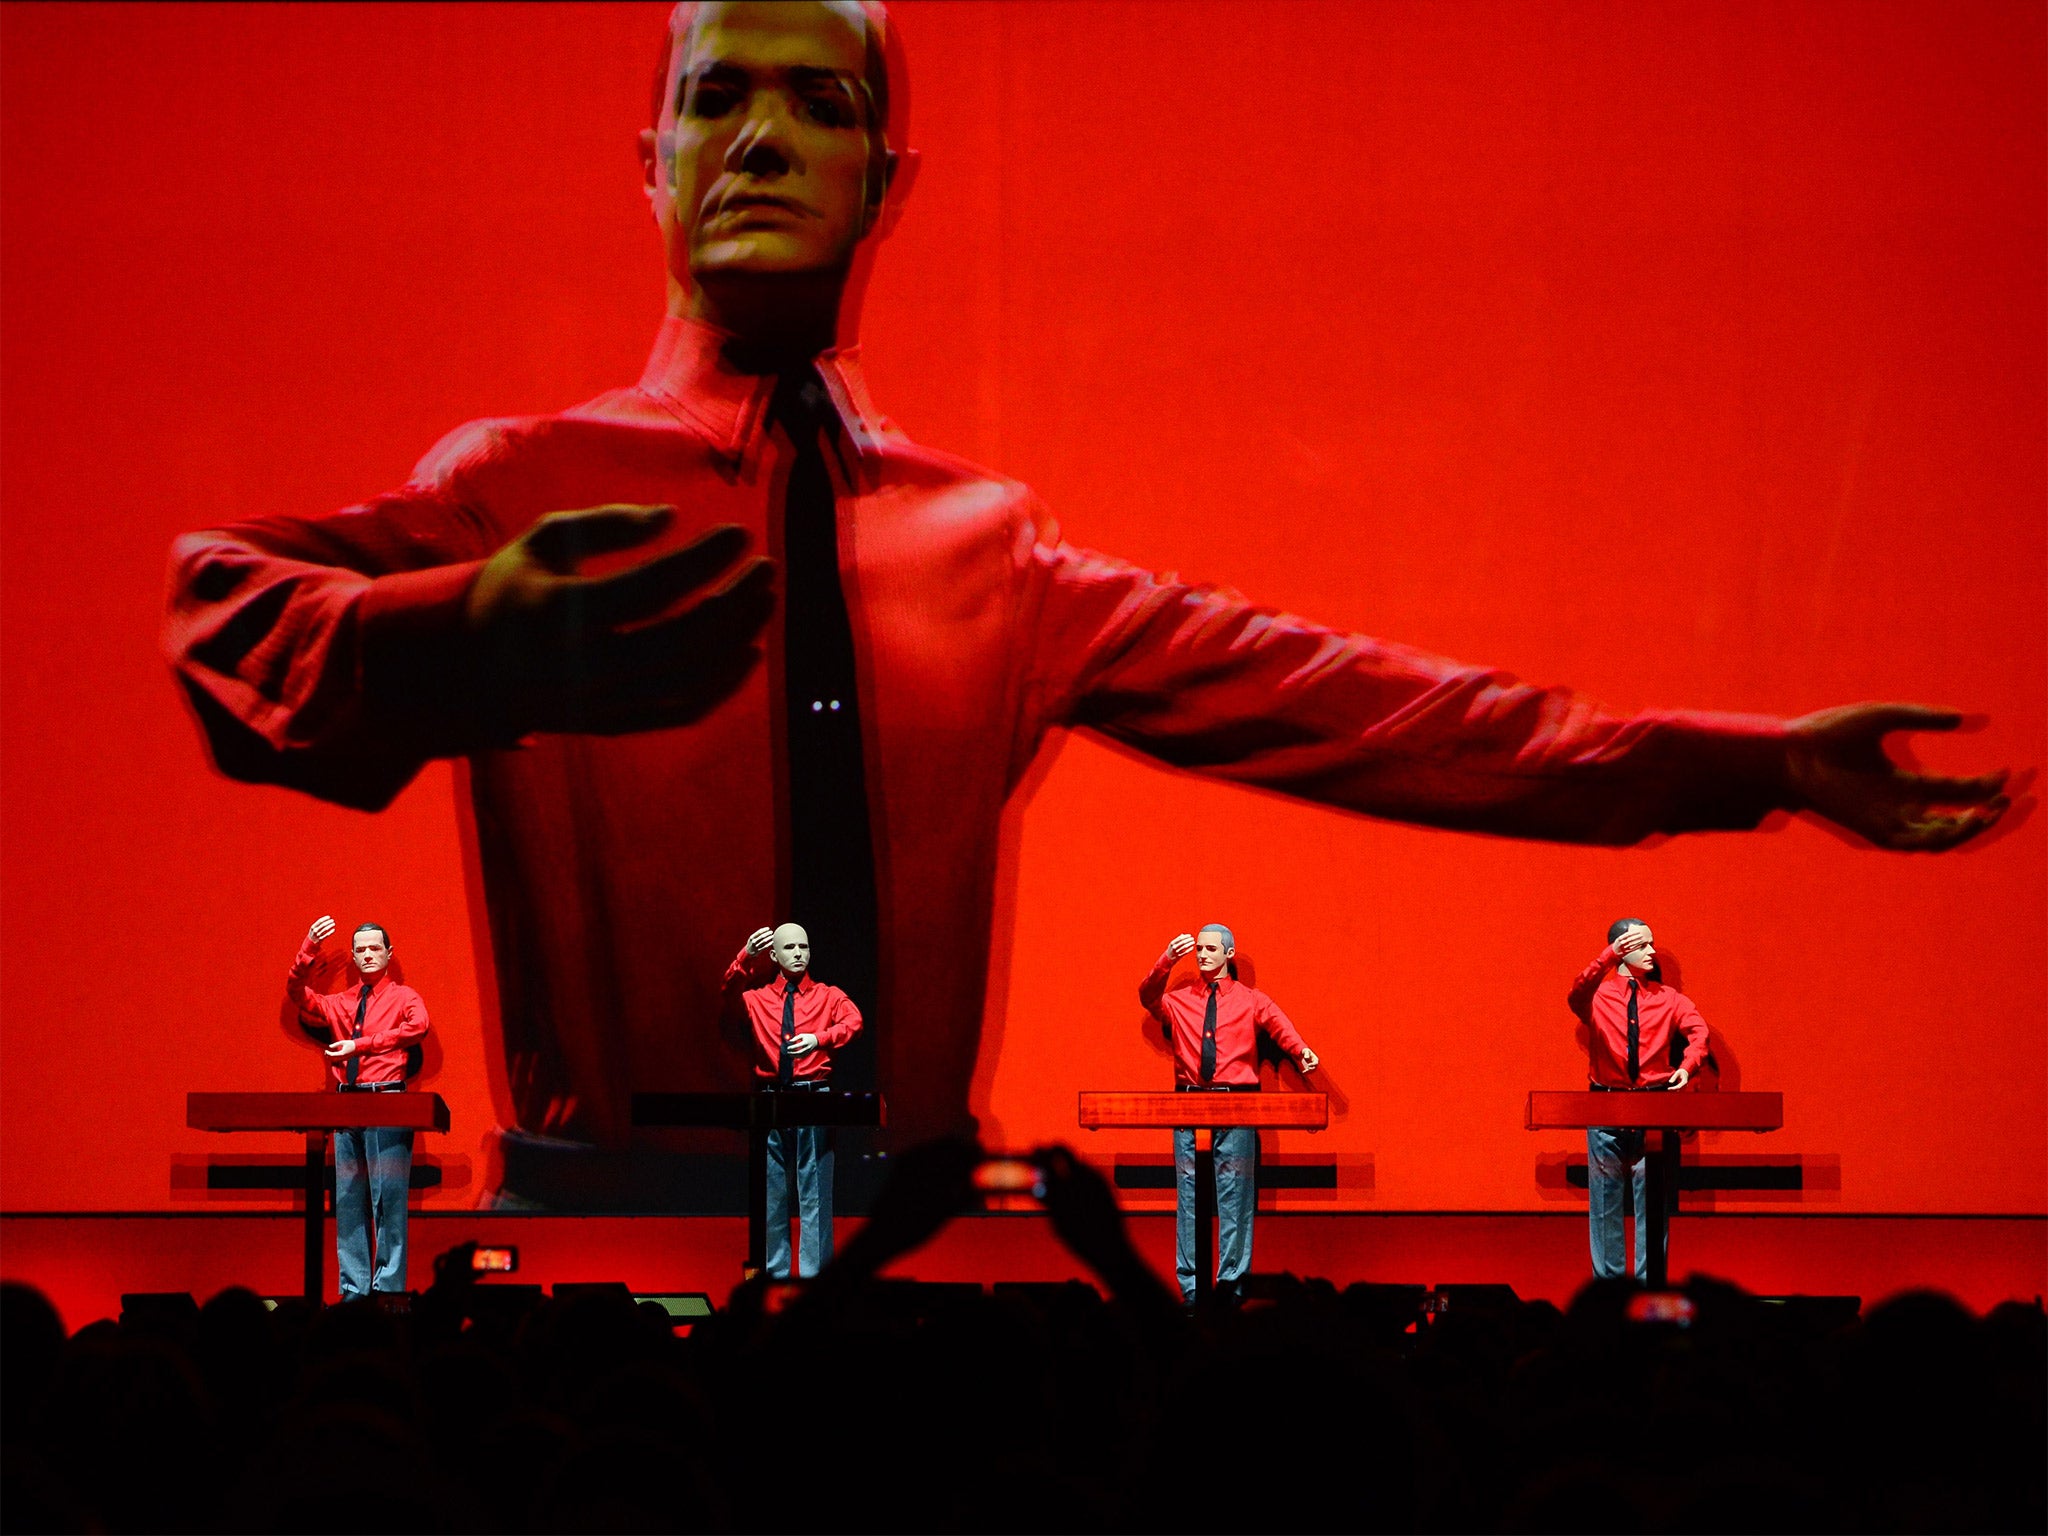 Kraftwerk performing at the Neue Nationalgalerie (New National Gallery) museum in Berlin earlier this month